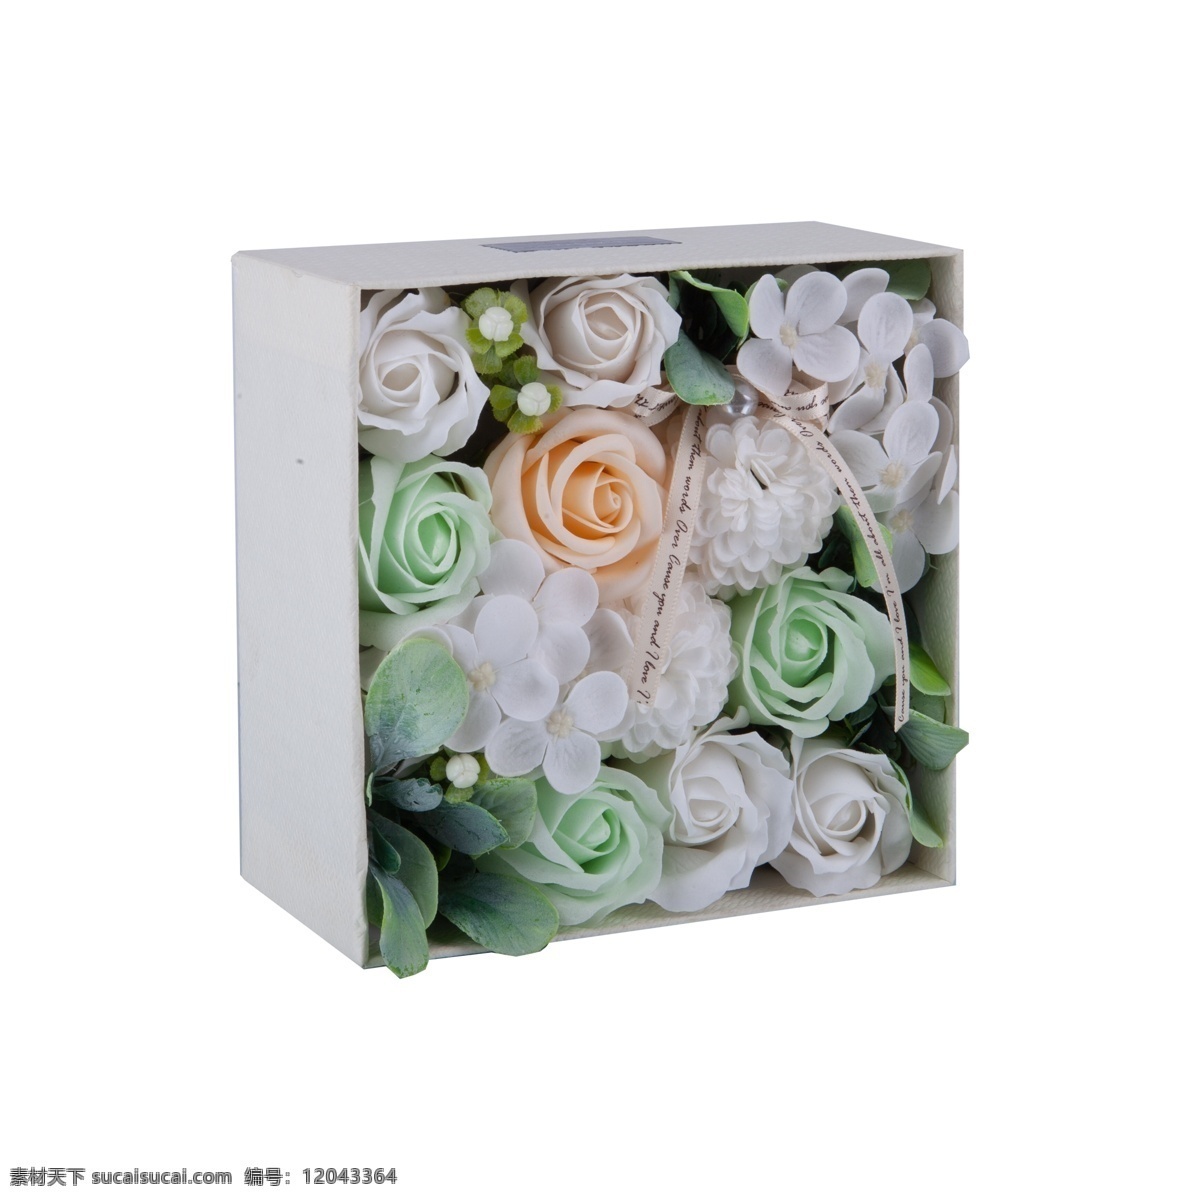 盒 鲜花 实拍 免 抠 一盒鲜花 情人节 礼物 爱情 纸盒 设计感 摆拍 实物拍摄 花卉 植物 观赏